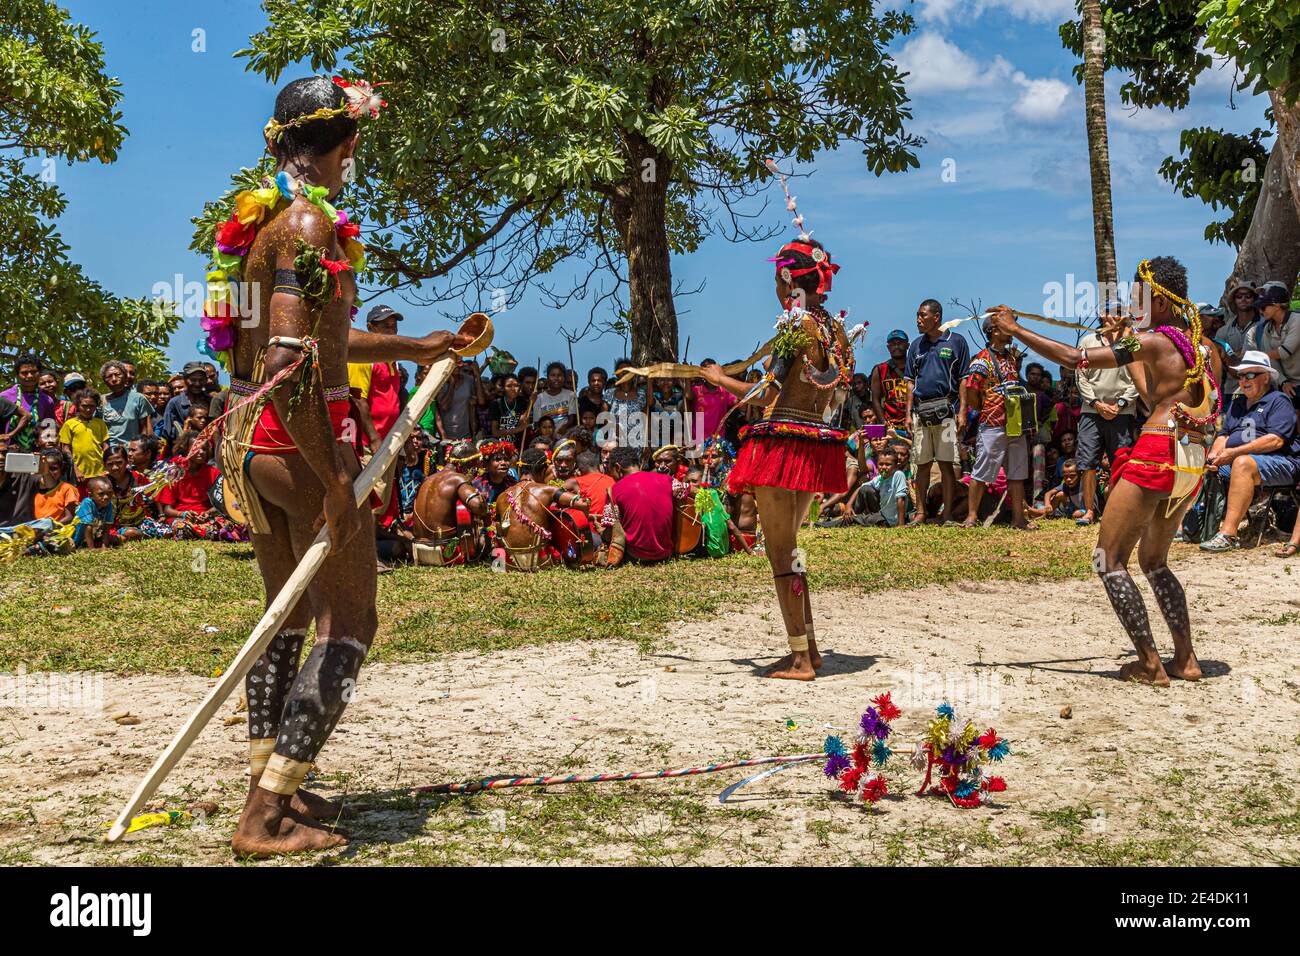 Danse Milamala traditionnelle des îles Trobriand pendant le Festival de l'amour libre, Kwebwaga, Papouasie-Nouvelle-Guinée Banque D'Images